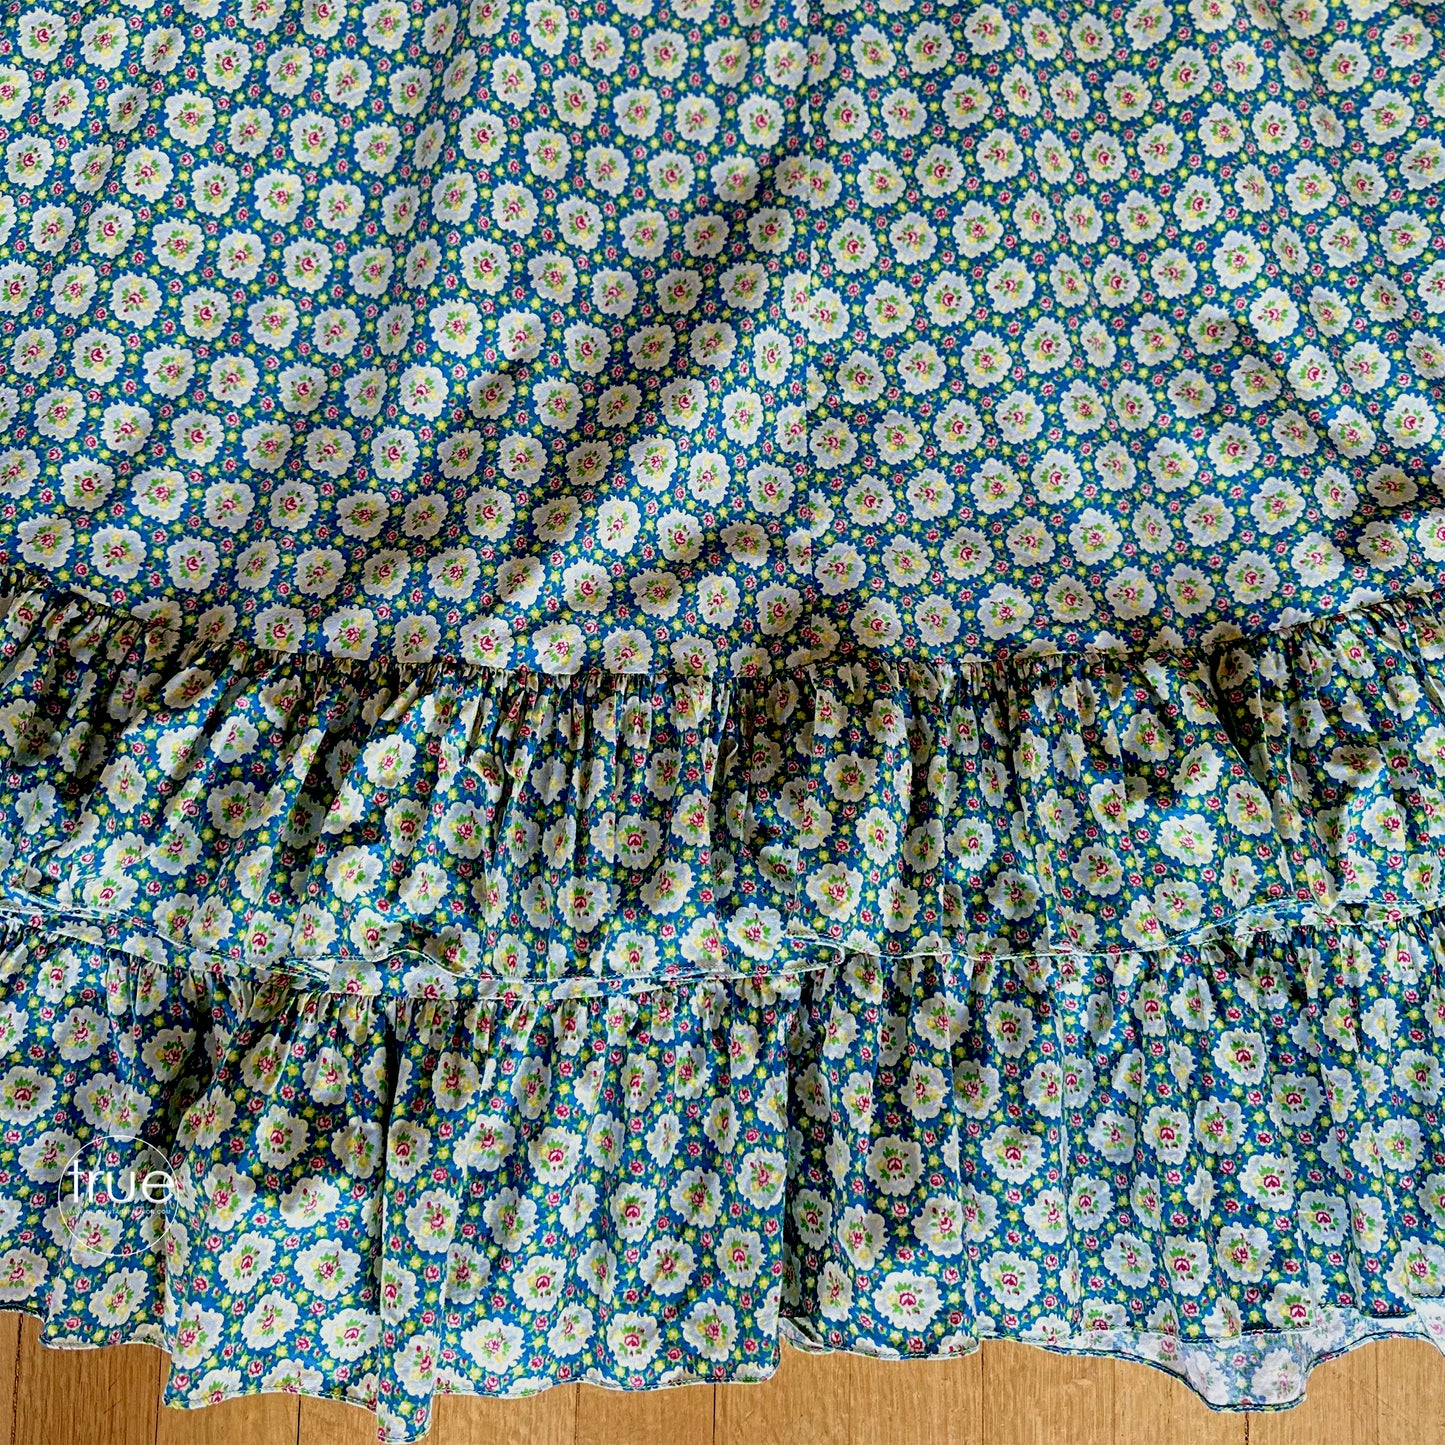 vintage 1930's dress set ...best NEIMAN MARCUS by WESTWAY-DALLAS 2 pc skirt & top cotton calico floral dress set